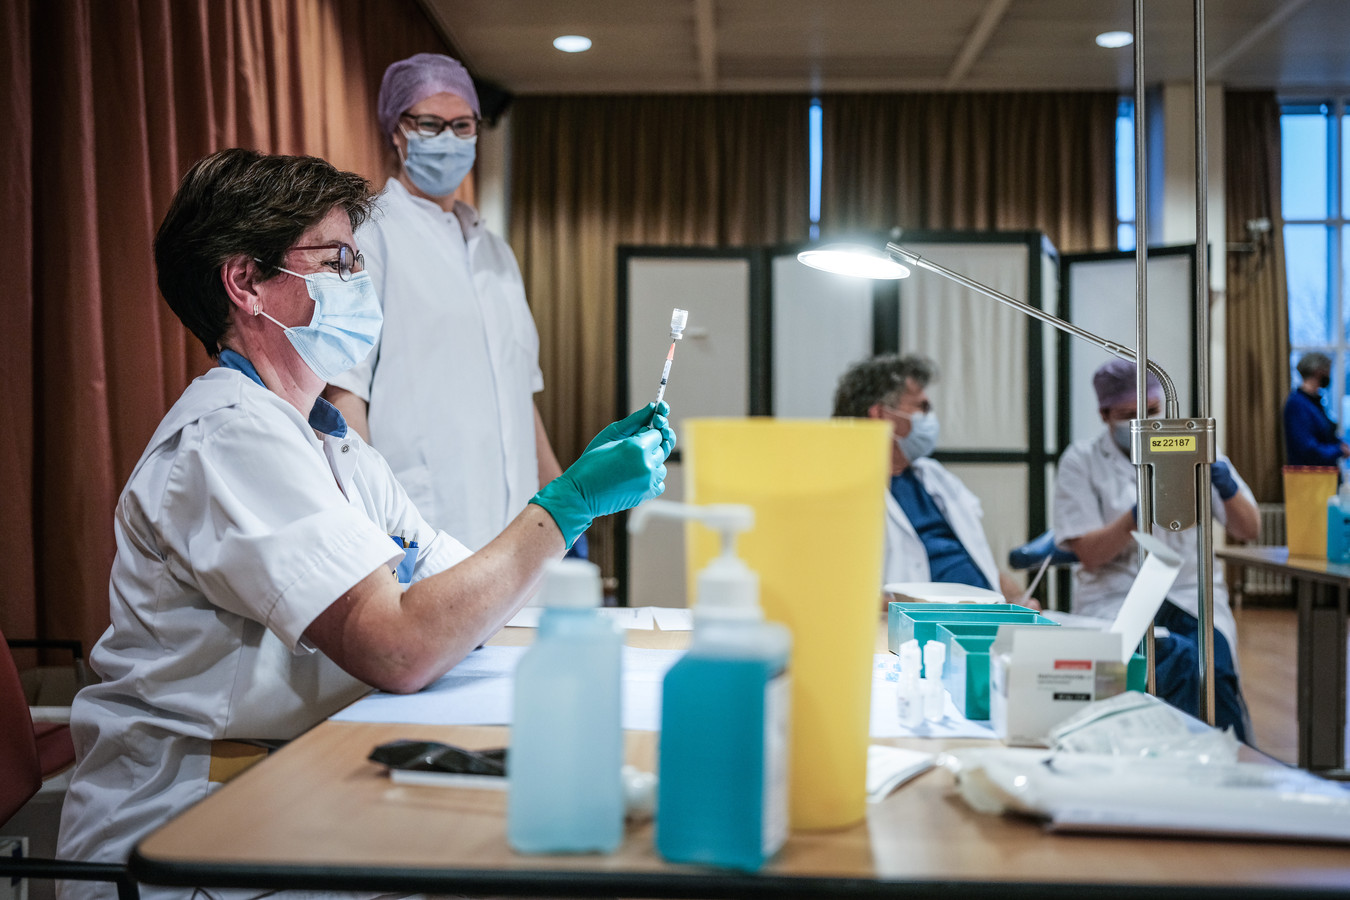 Medewerkers van het Slingeland Ziekenhuis in Doetinchem maken vaccinaties klaar tegen corona.